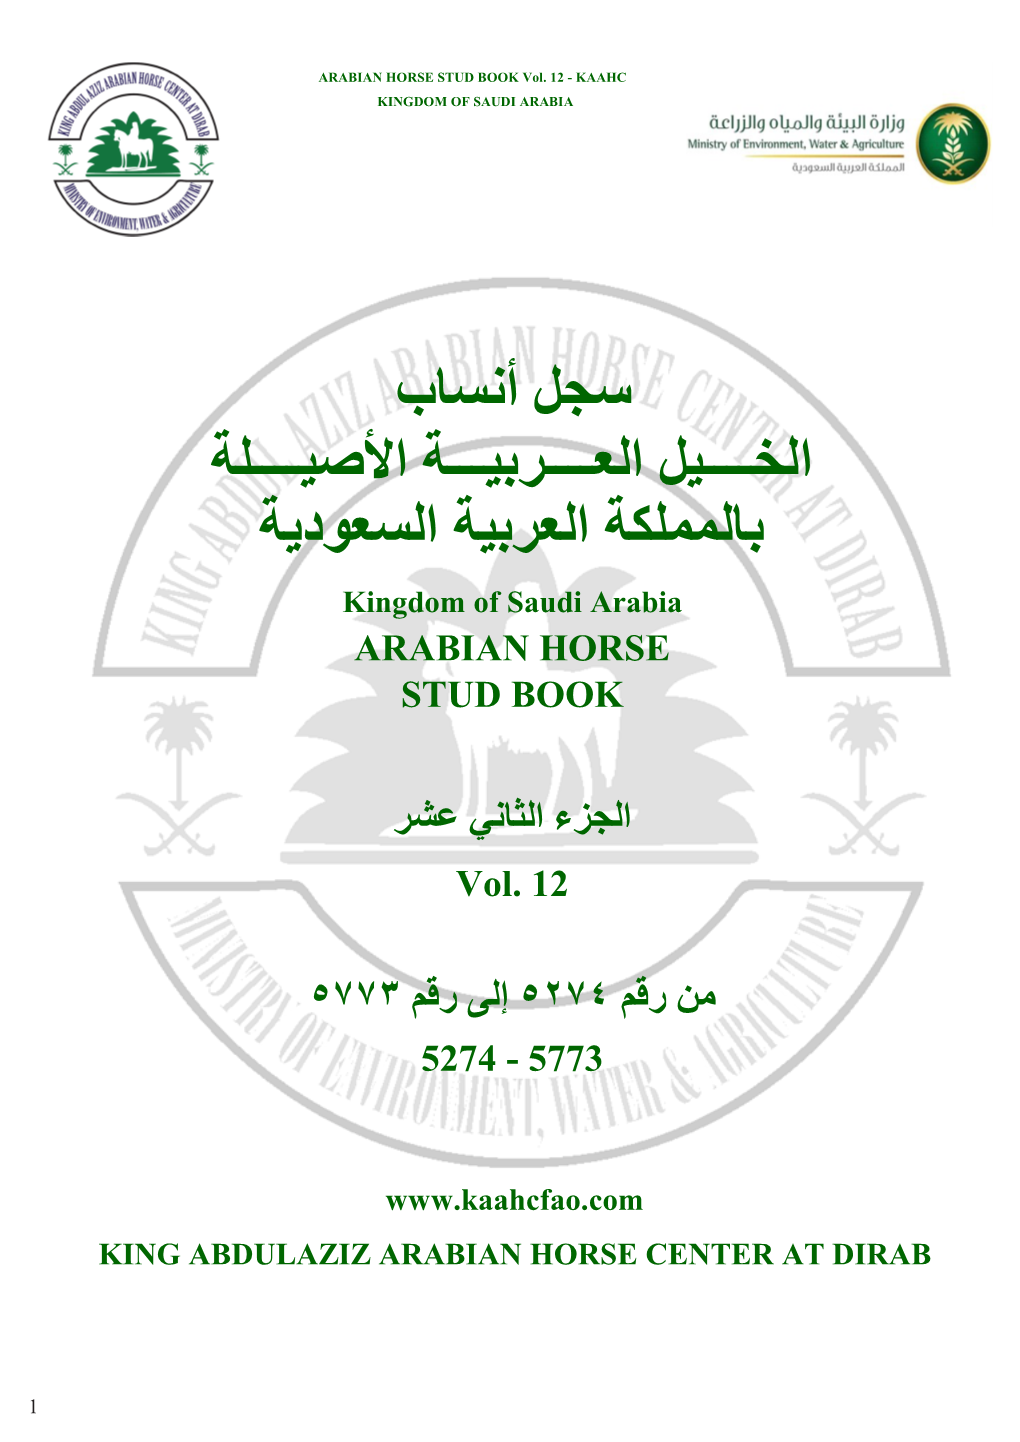 سجل أنساب الخــــيل العــــربيـــة اﻷصيــــلة بالمملكة العربية السعودية Kingdom of Saudi Arabia ARABIAN HORSE STUD BOOK